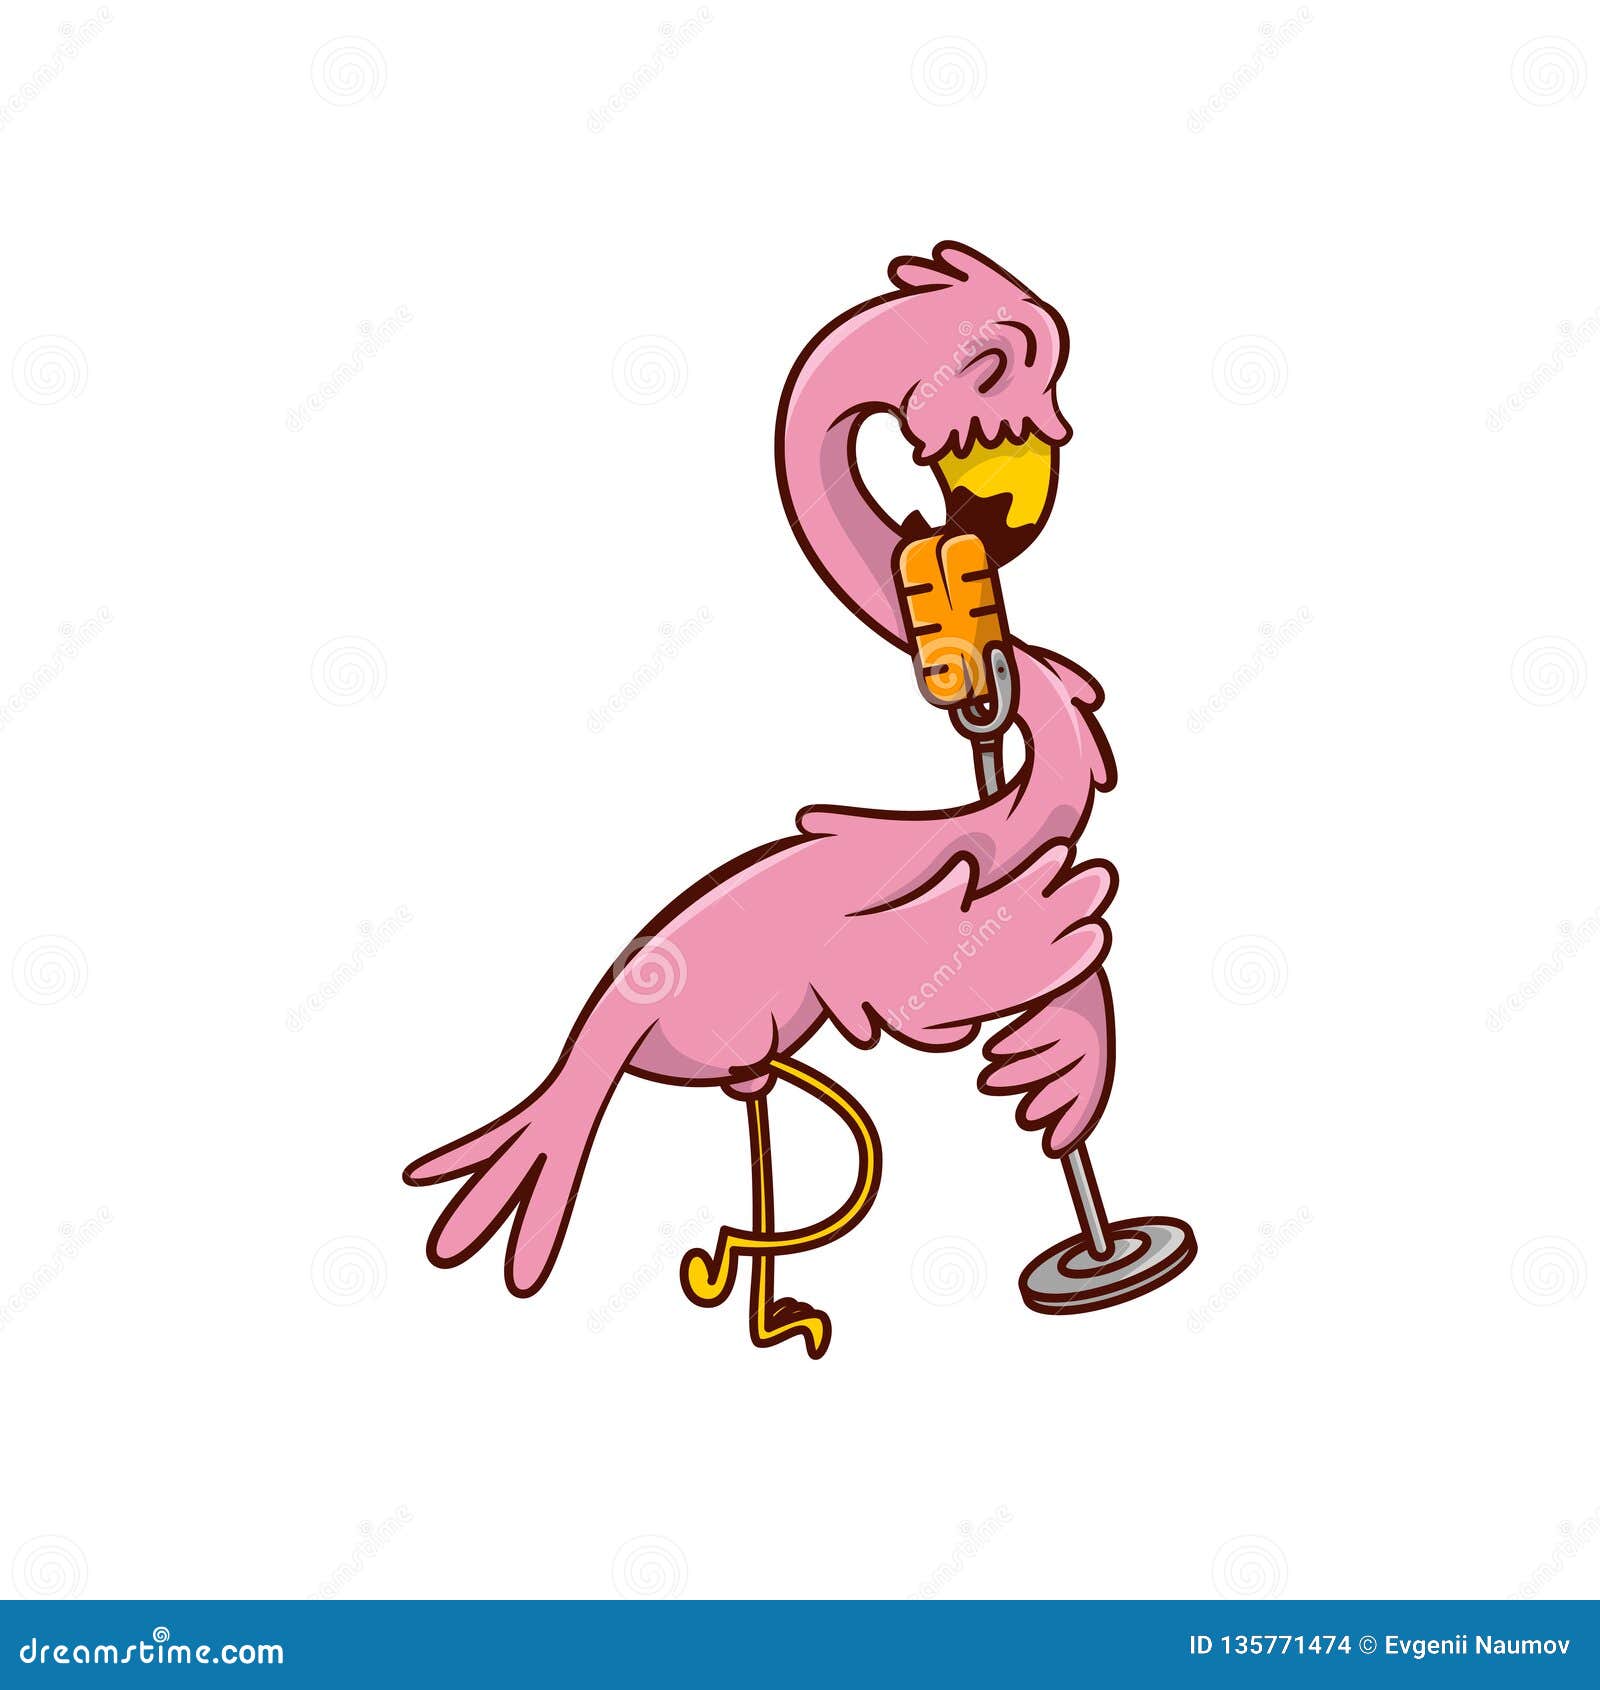 Flamingo Sings His Favorite Song